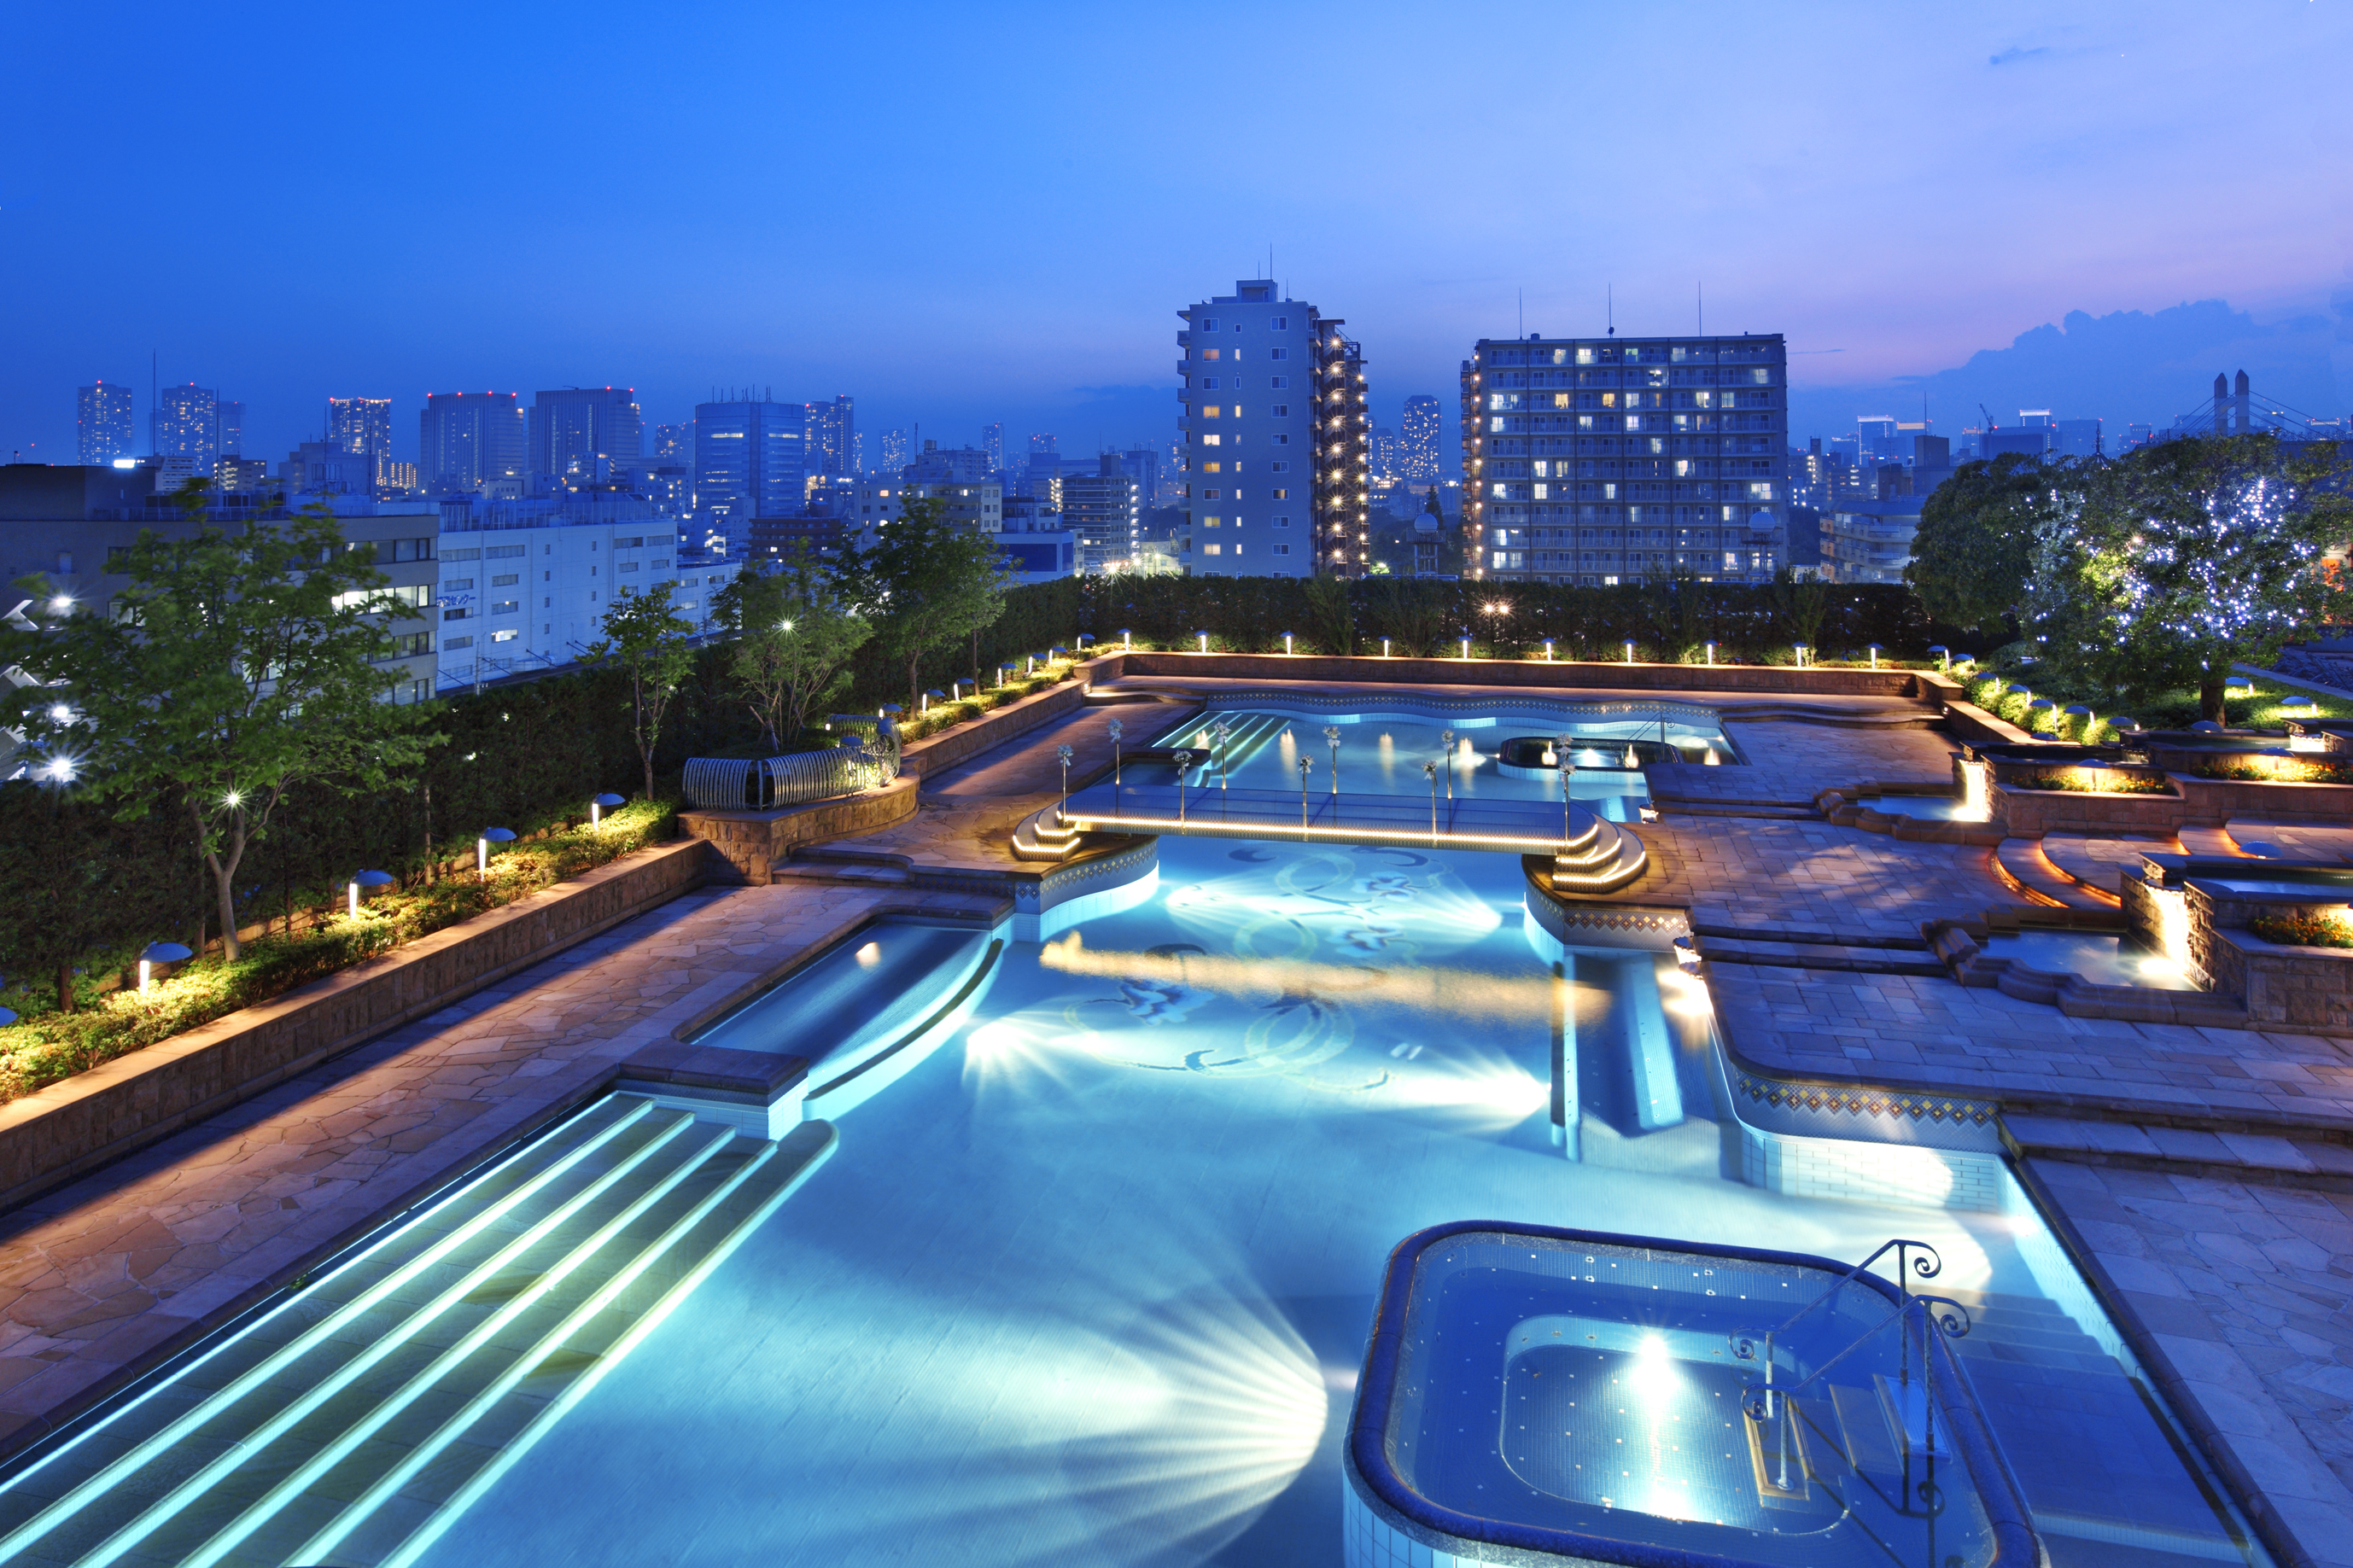 ホテルイースト21東京 ガーデンプールオープン 本年度よりナイトプールも営業開始 オークラ ホテルズ リゾーツのプレスリリース